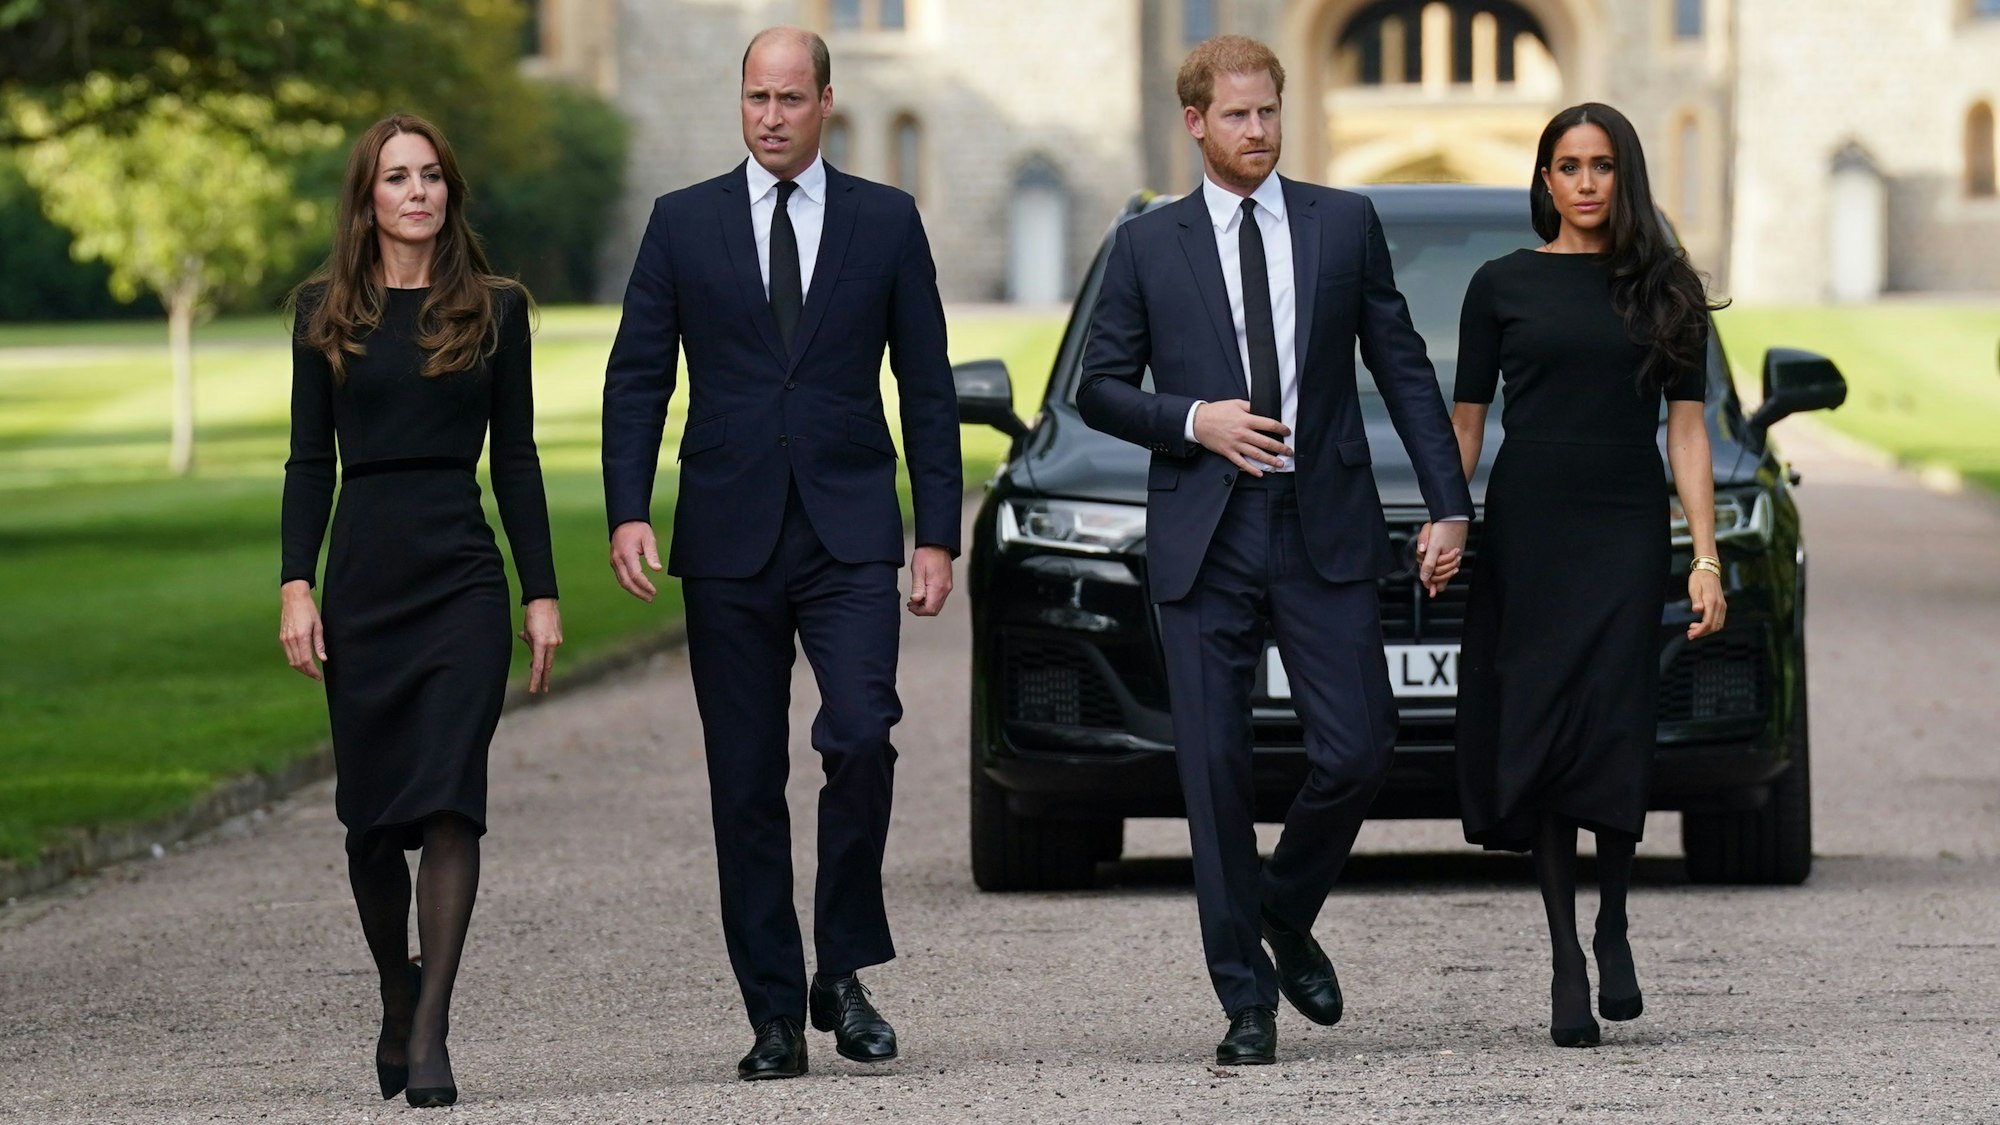 Catherine, Prinzessin von Wales, Prinz William, Prinz von Wales, Prinz Harry, Herzog von Sussex, und Meghan, Herzogin von Sussex auf dem langen Spaziergang auf Schloss Windsor. Sie tragen alle schwarze Kleidung.